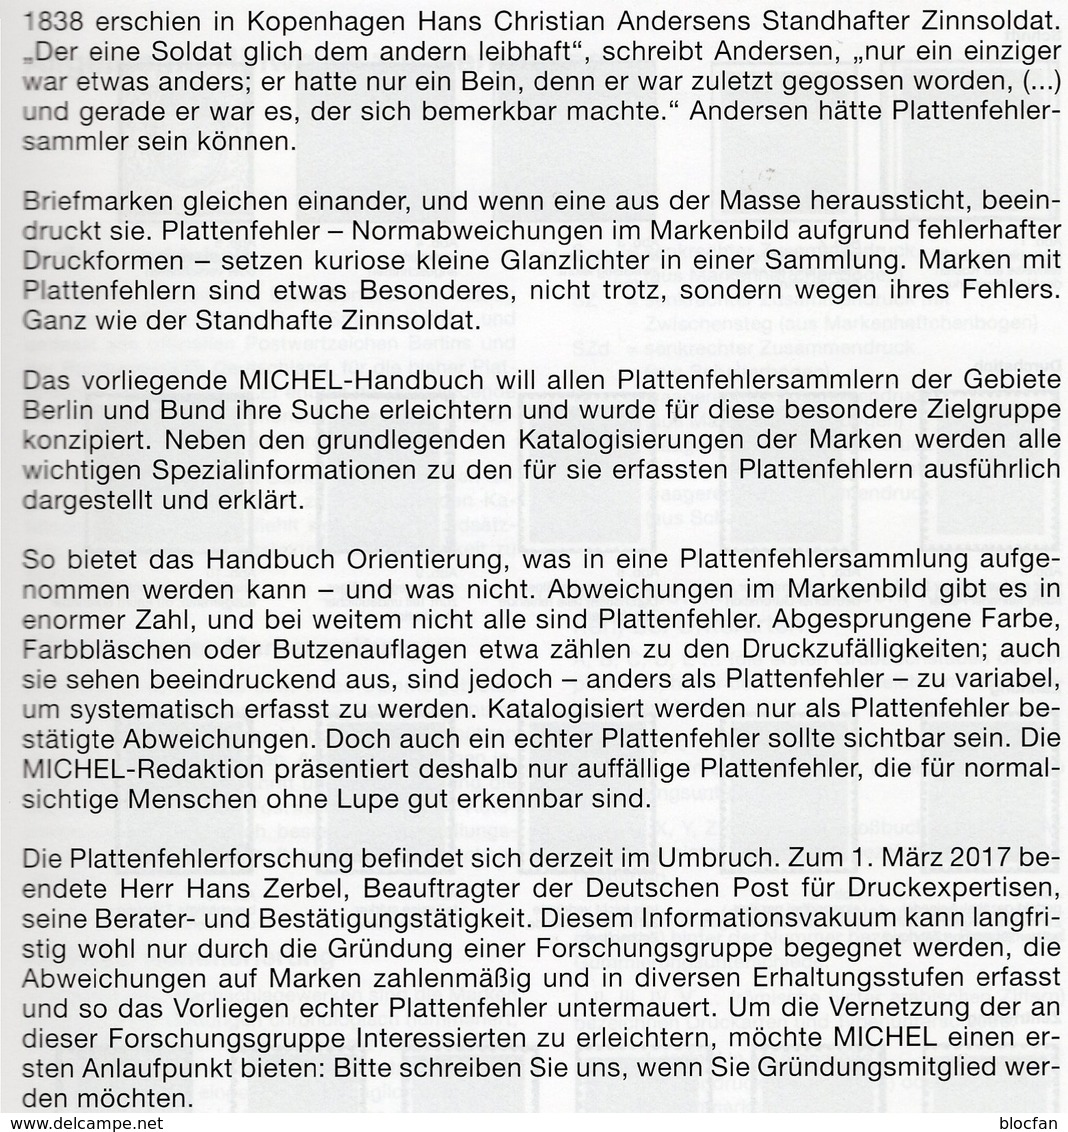 Spezial-Katalog Plattenfehler BUND Berlin New 2018 MICHEL 40€ Fehler Auf Briefmarken Error Stamps Catalogue Germany - Collections